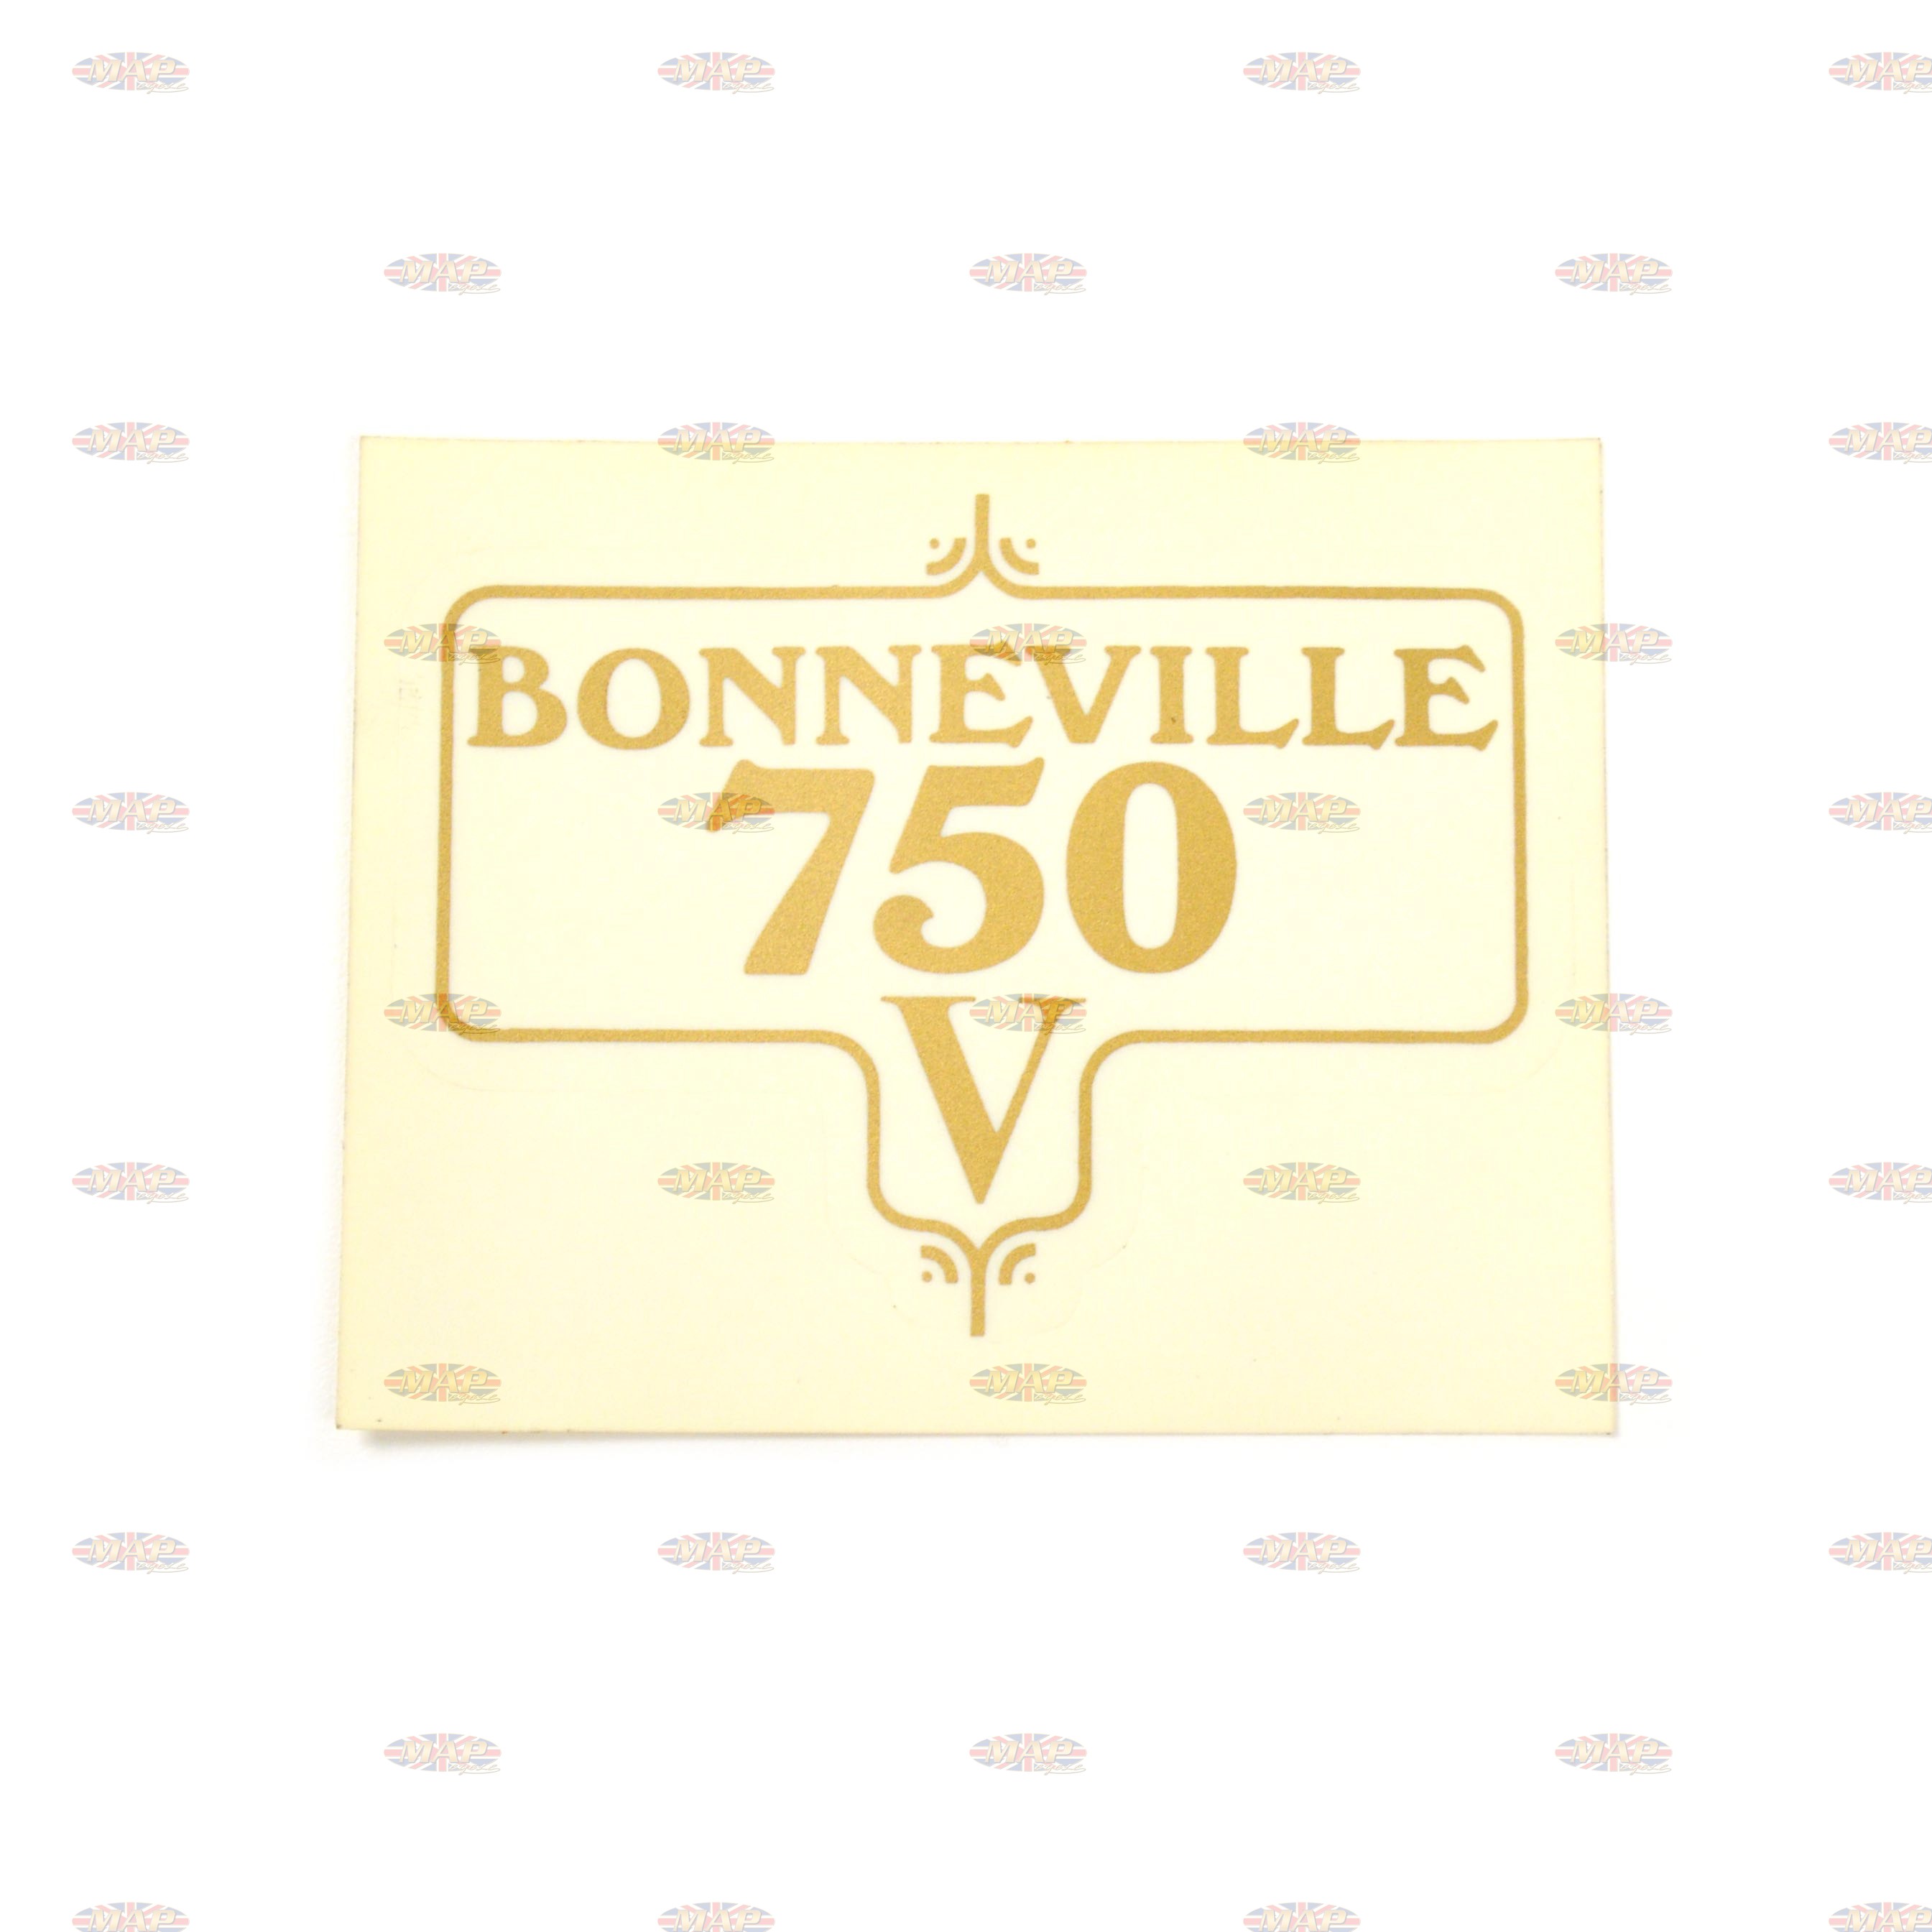 DECAL/  BONNEVILLE 750 60-3953